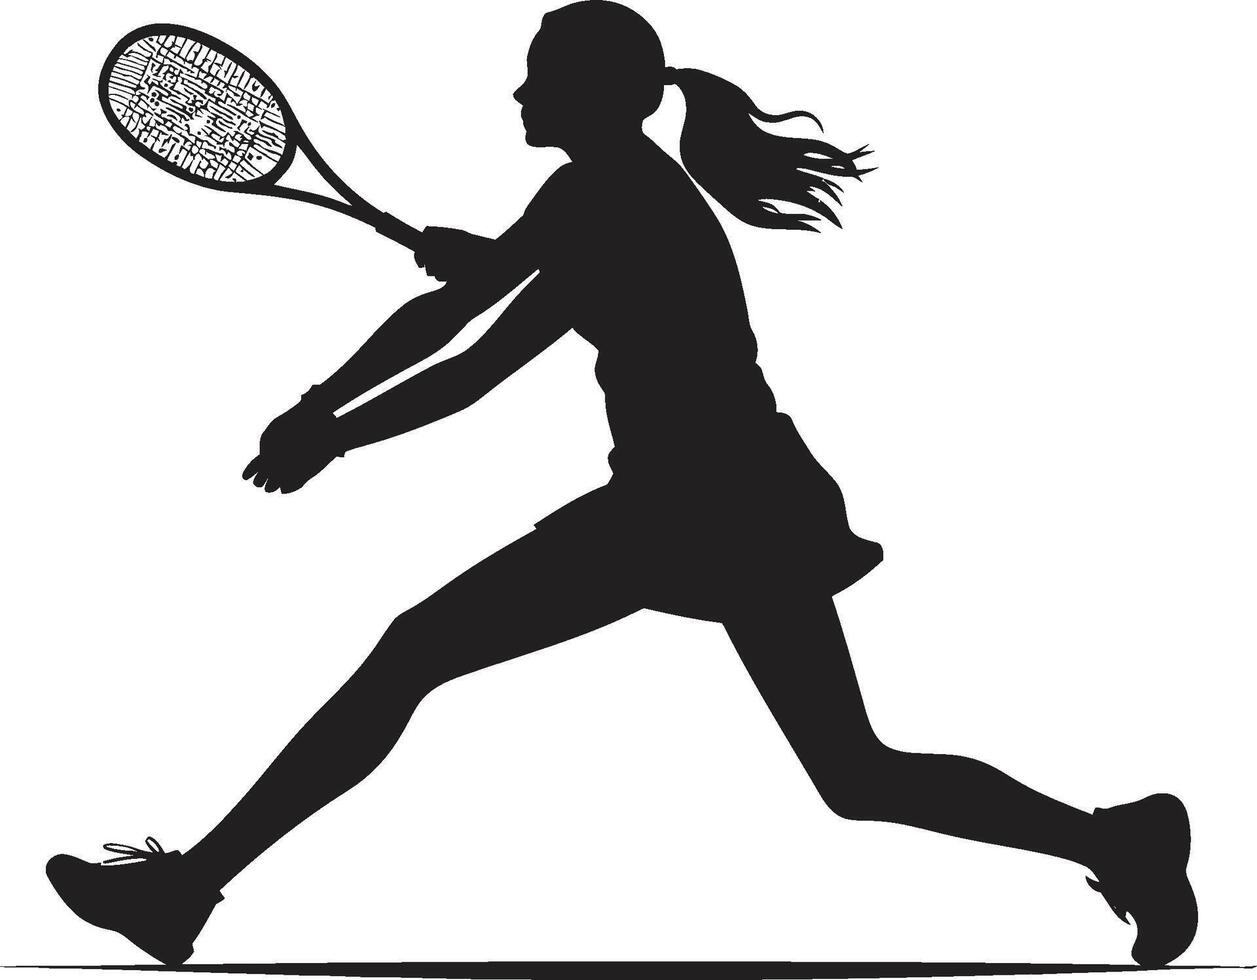 racket renässans tennis spelare logotyp i vektor konst smash suverän vektor design för tennis royalty